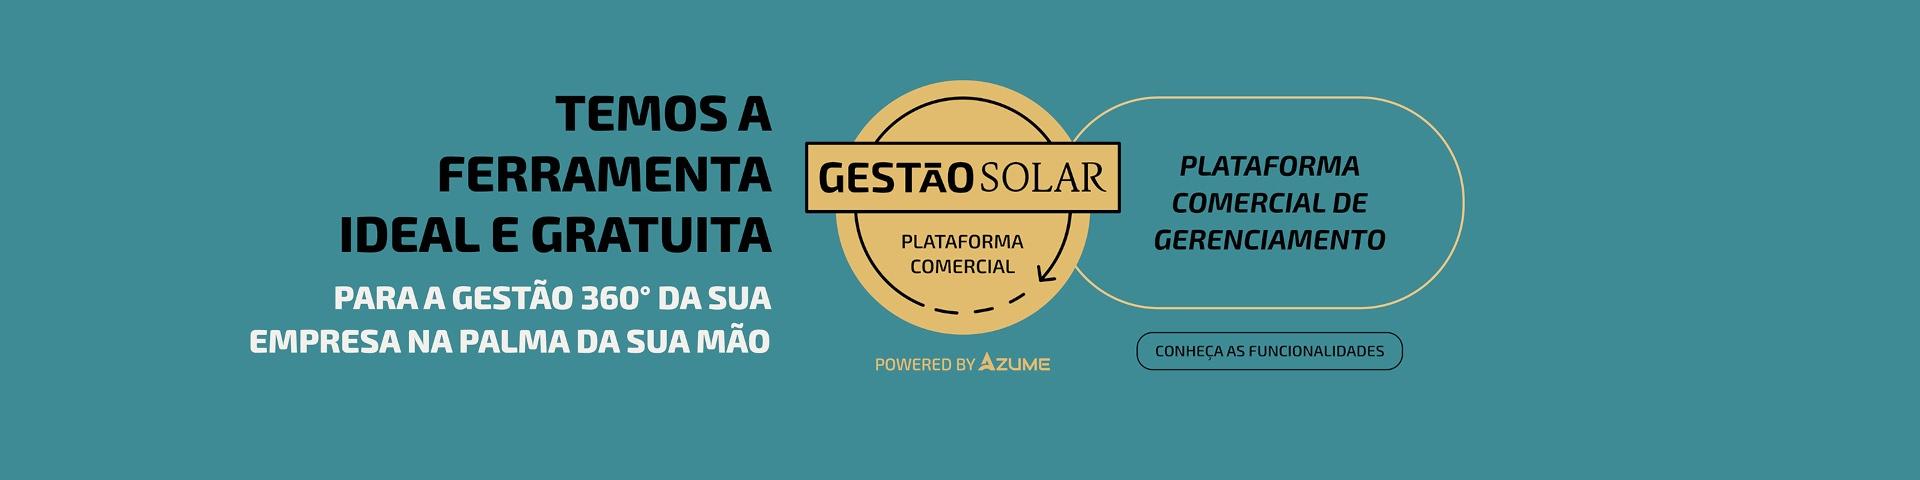 Banner Gestão Solar Plataforma Comercial Powered by Azume